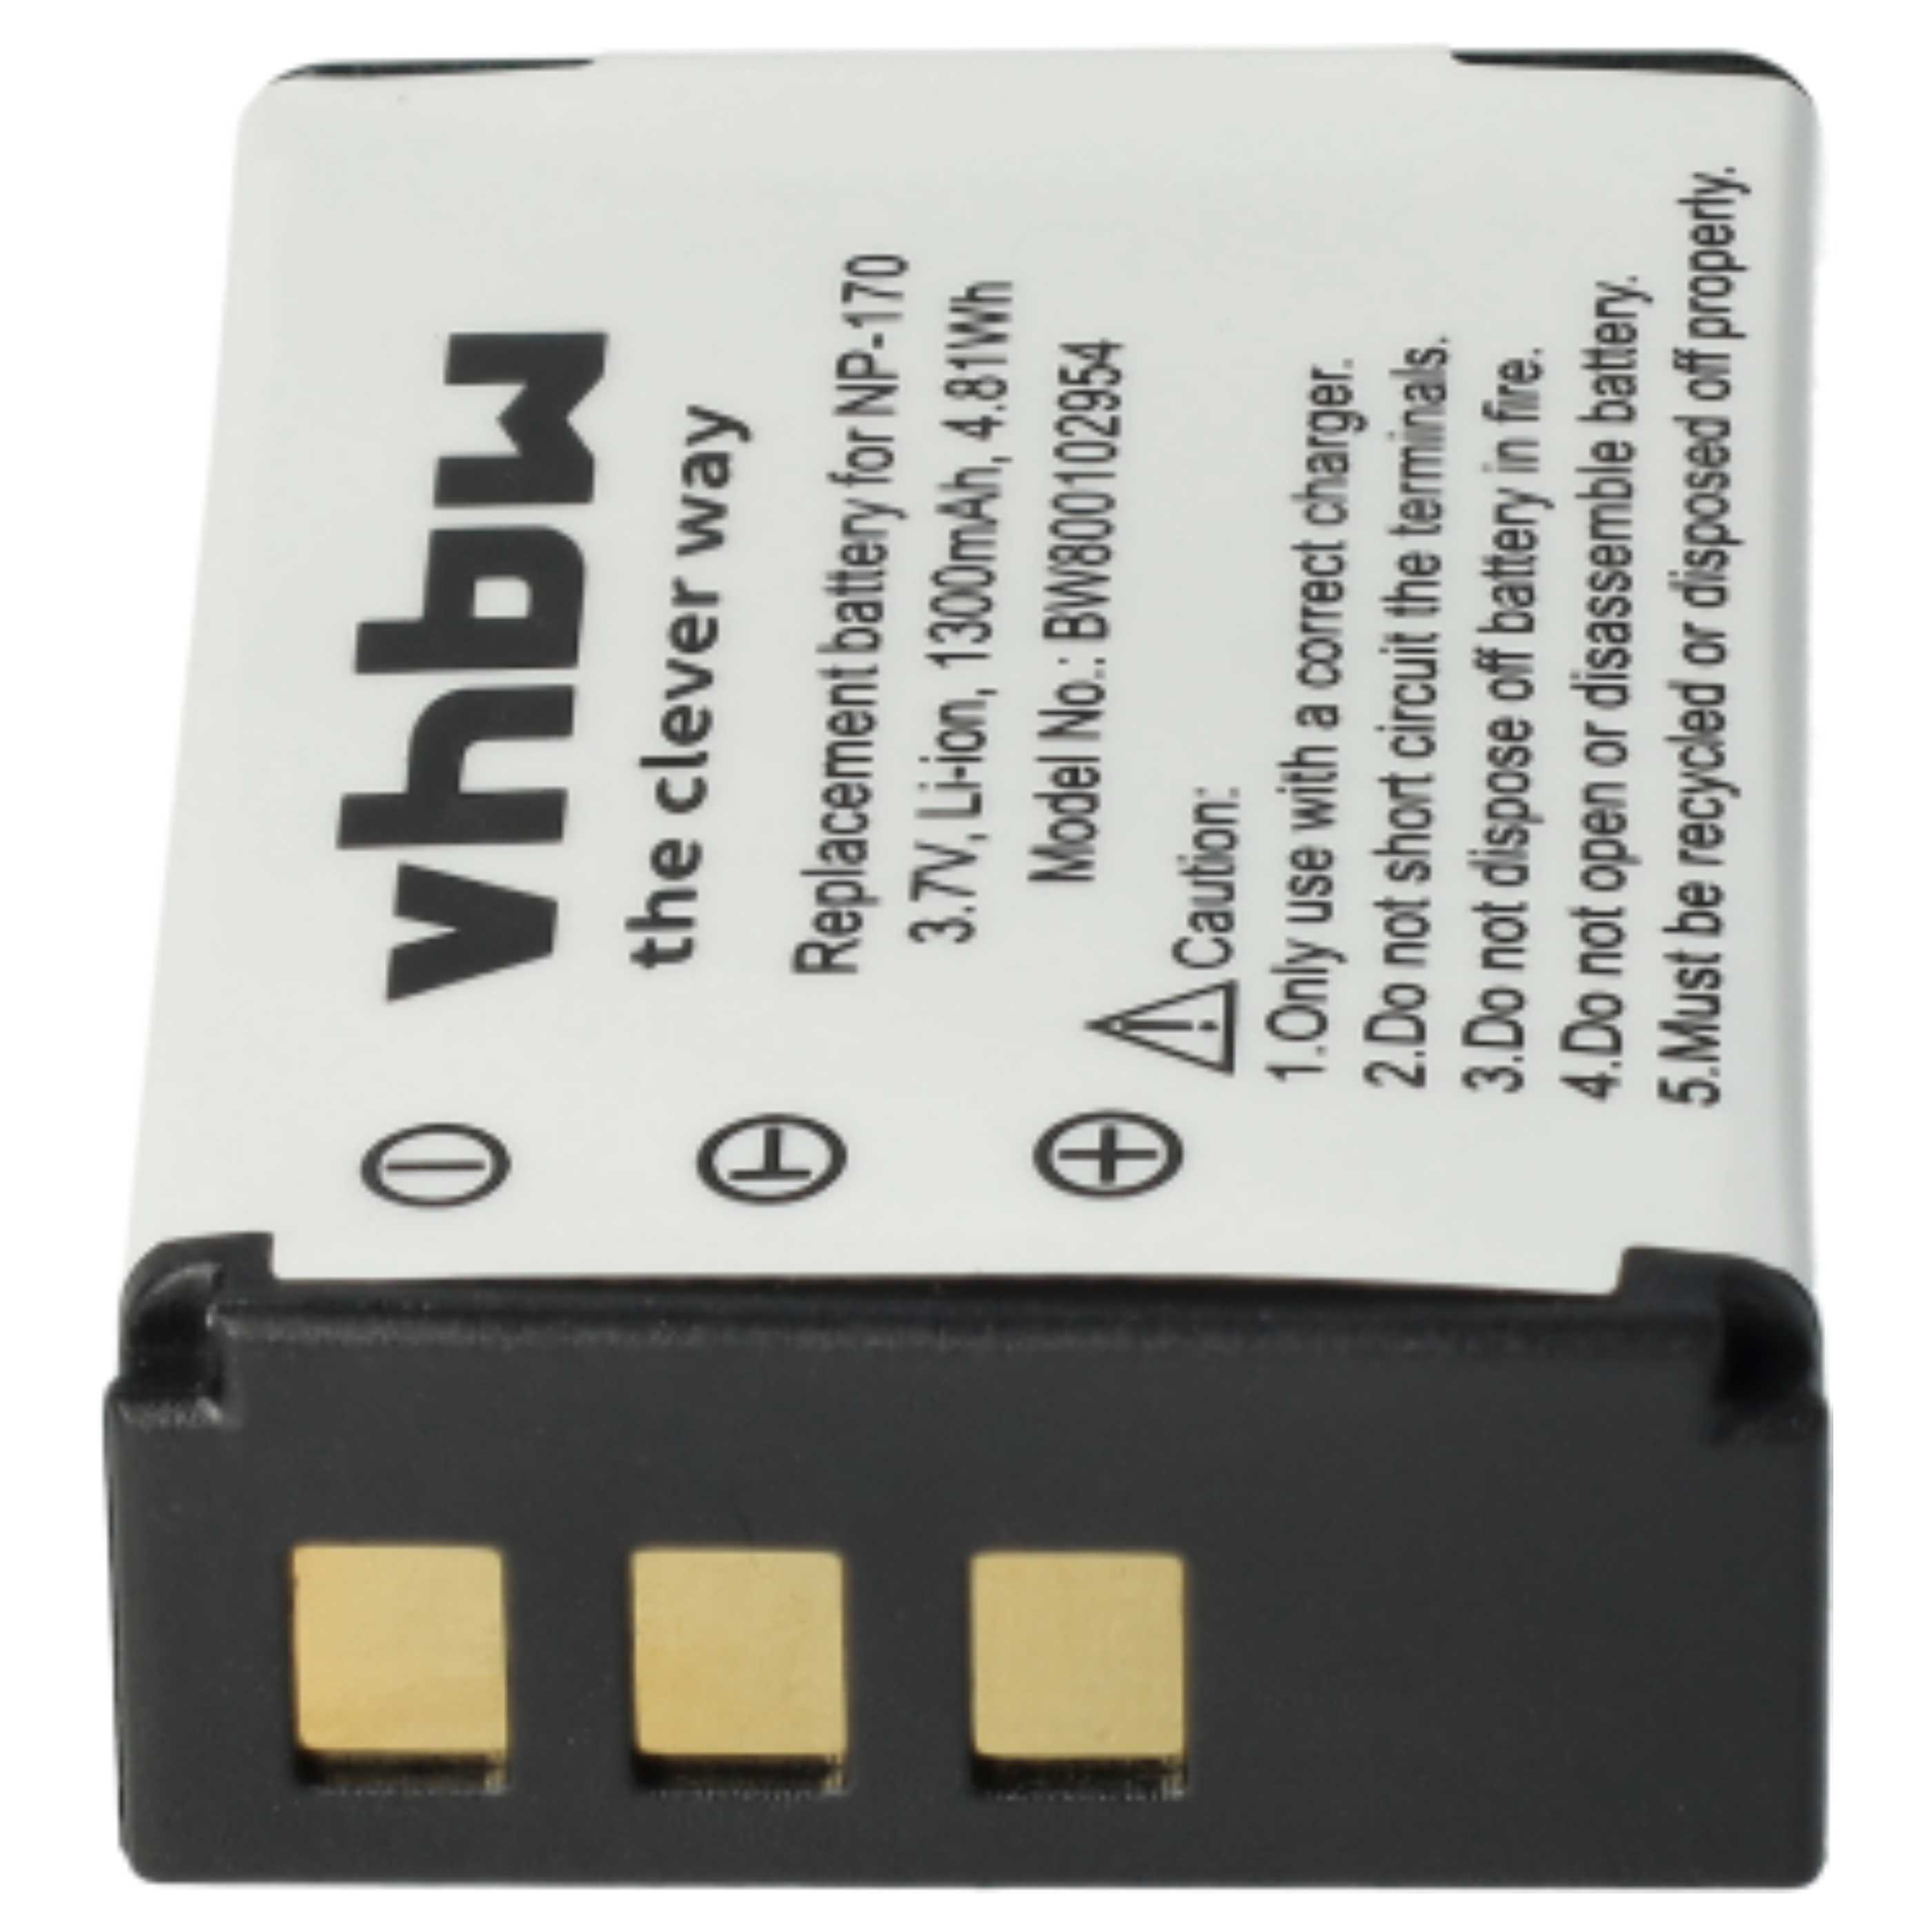 Batterie remplace Toshiba PA3985 pour caméscope - 1300mAh 3,7V Li-ion